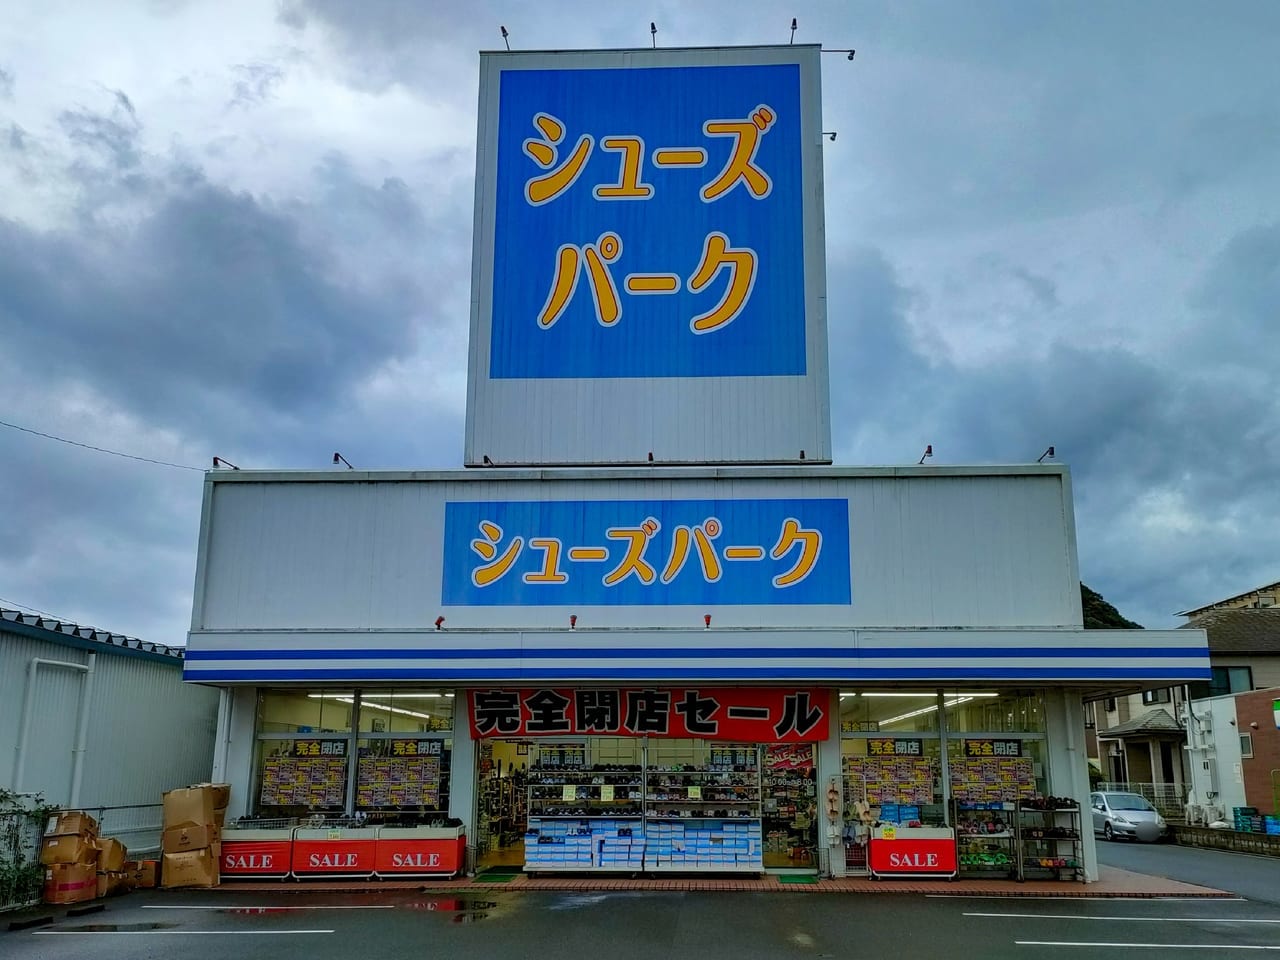 「シューズパーク 平塚西店」が完全閉店します。